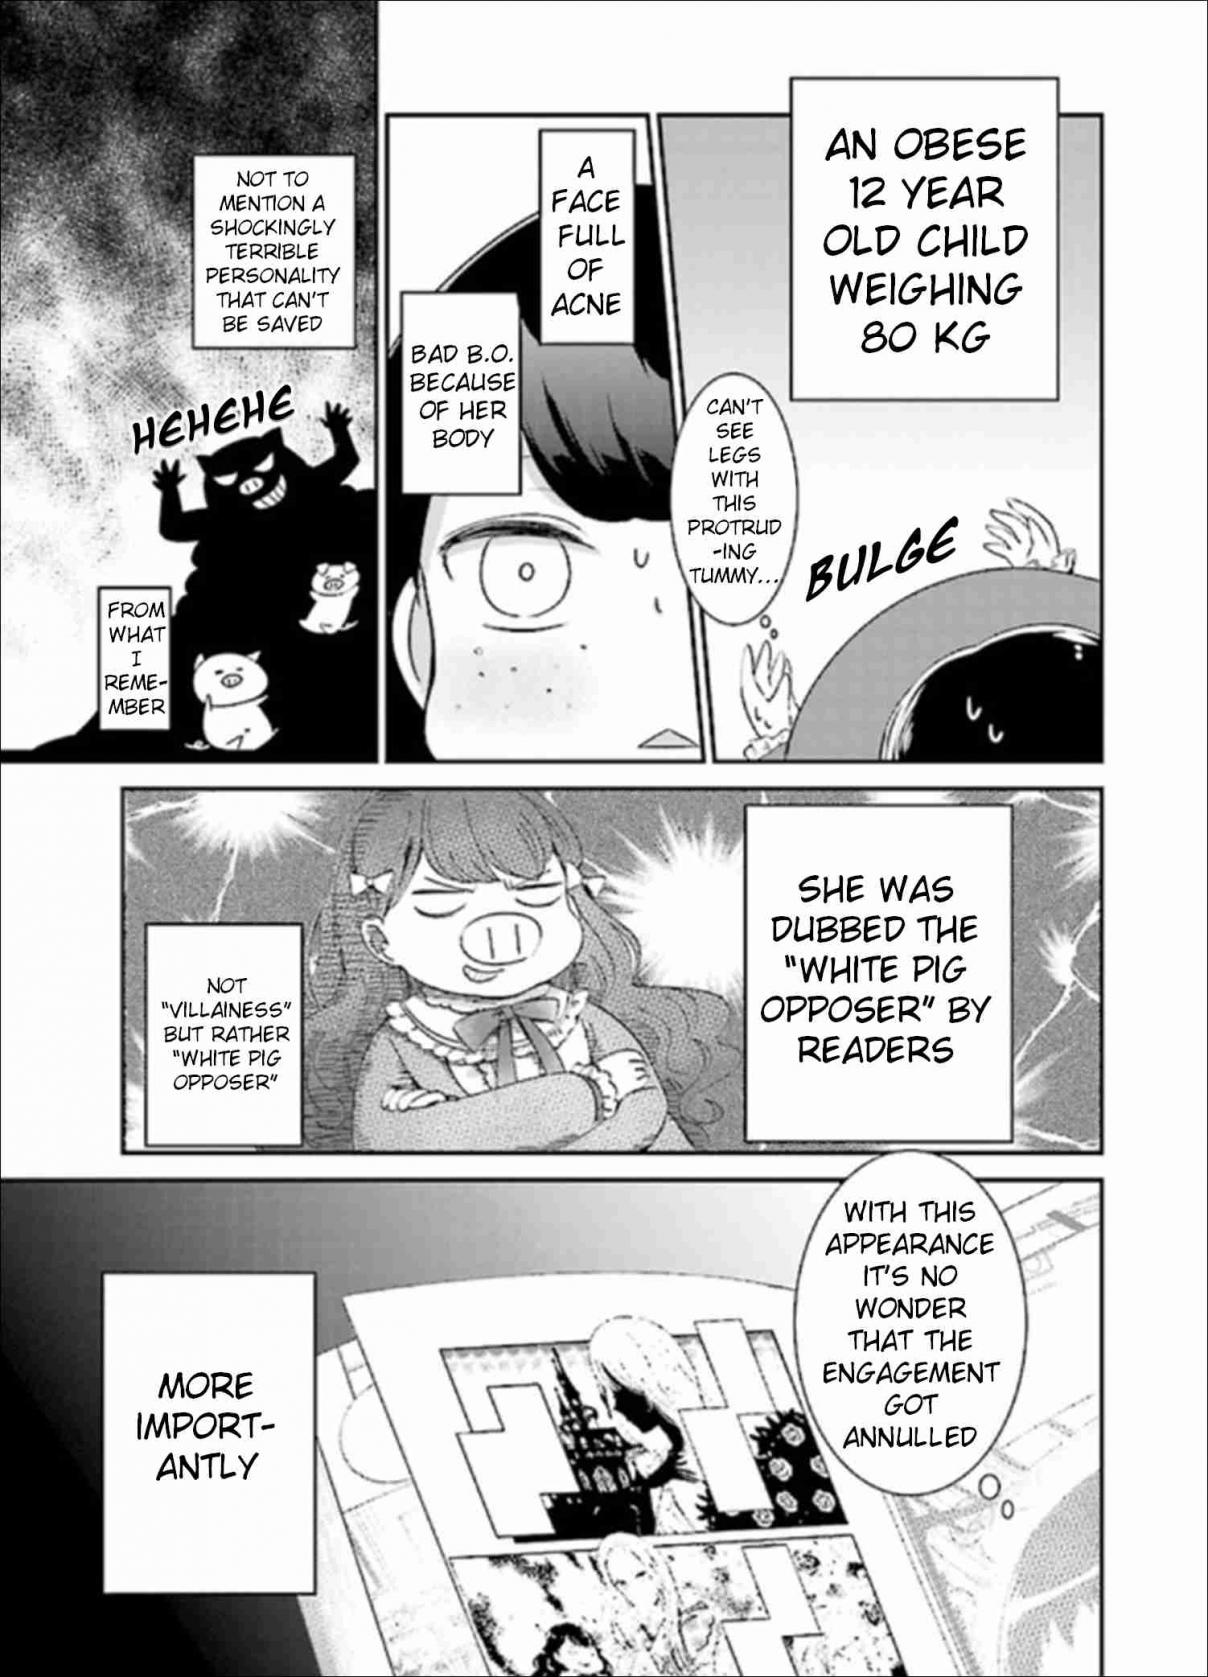 Tensei Saki ga Shoujo Manga no Shiro Buta Reijou datta Vol. 1 Ch. 1 Volume 1 Chapter 1